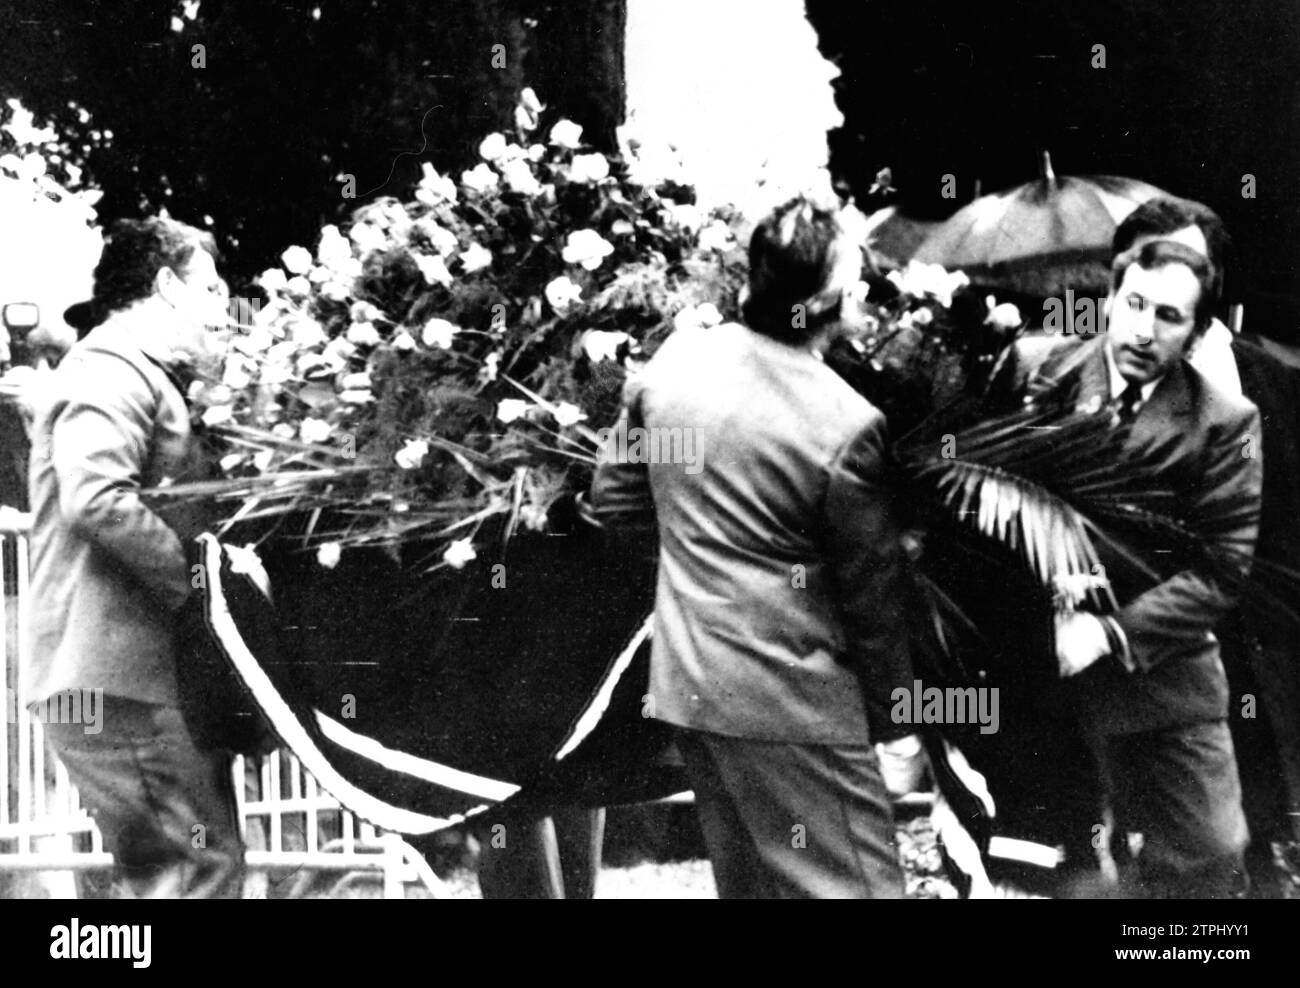 12/27/1977. Corsier sur Vevey (Schweiz). Die sterblichen Überreste von Charles Chaplin kommen, transportiert von vier Mitarbeitern vom Friedhof dieser Schweizer Stadt, zum Korsischen Friedhof, wo sie heute begraben wurden. Quelle: Album/Archivo ABC Stockfoto